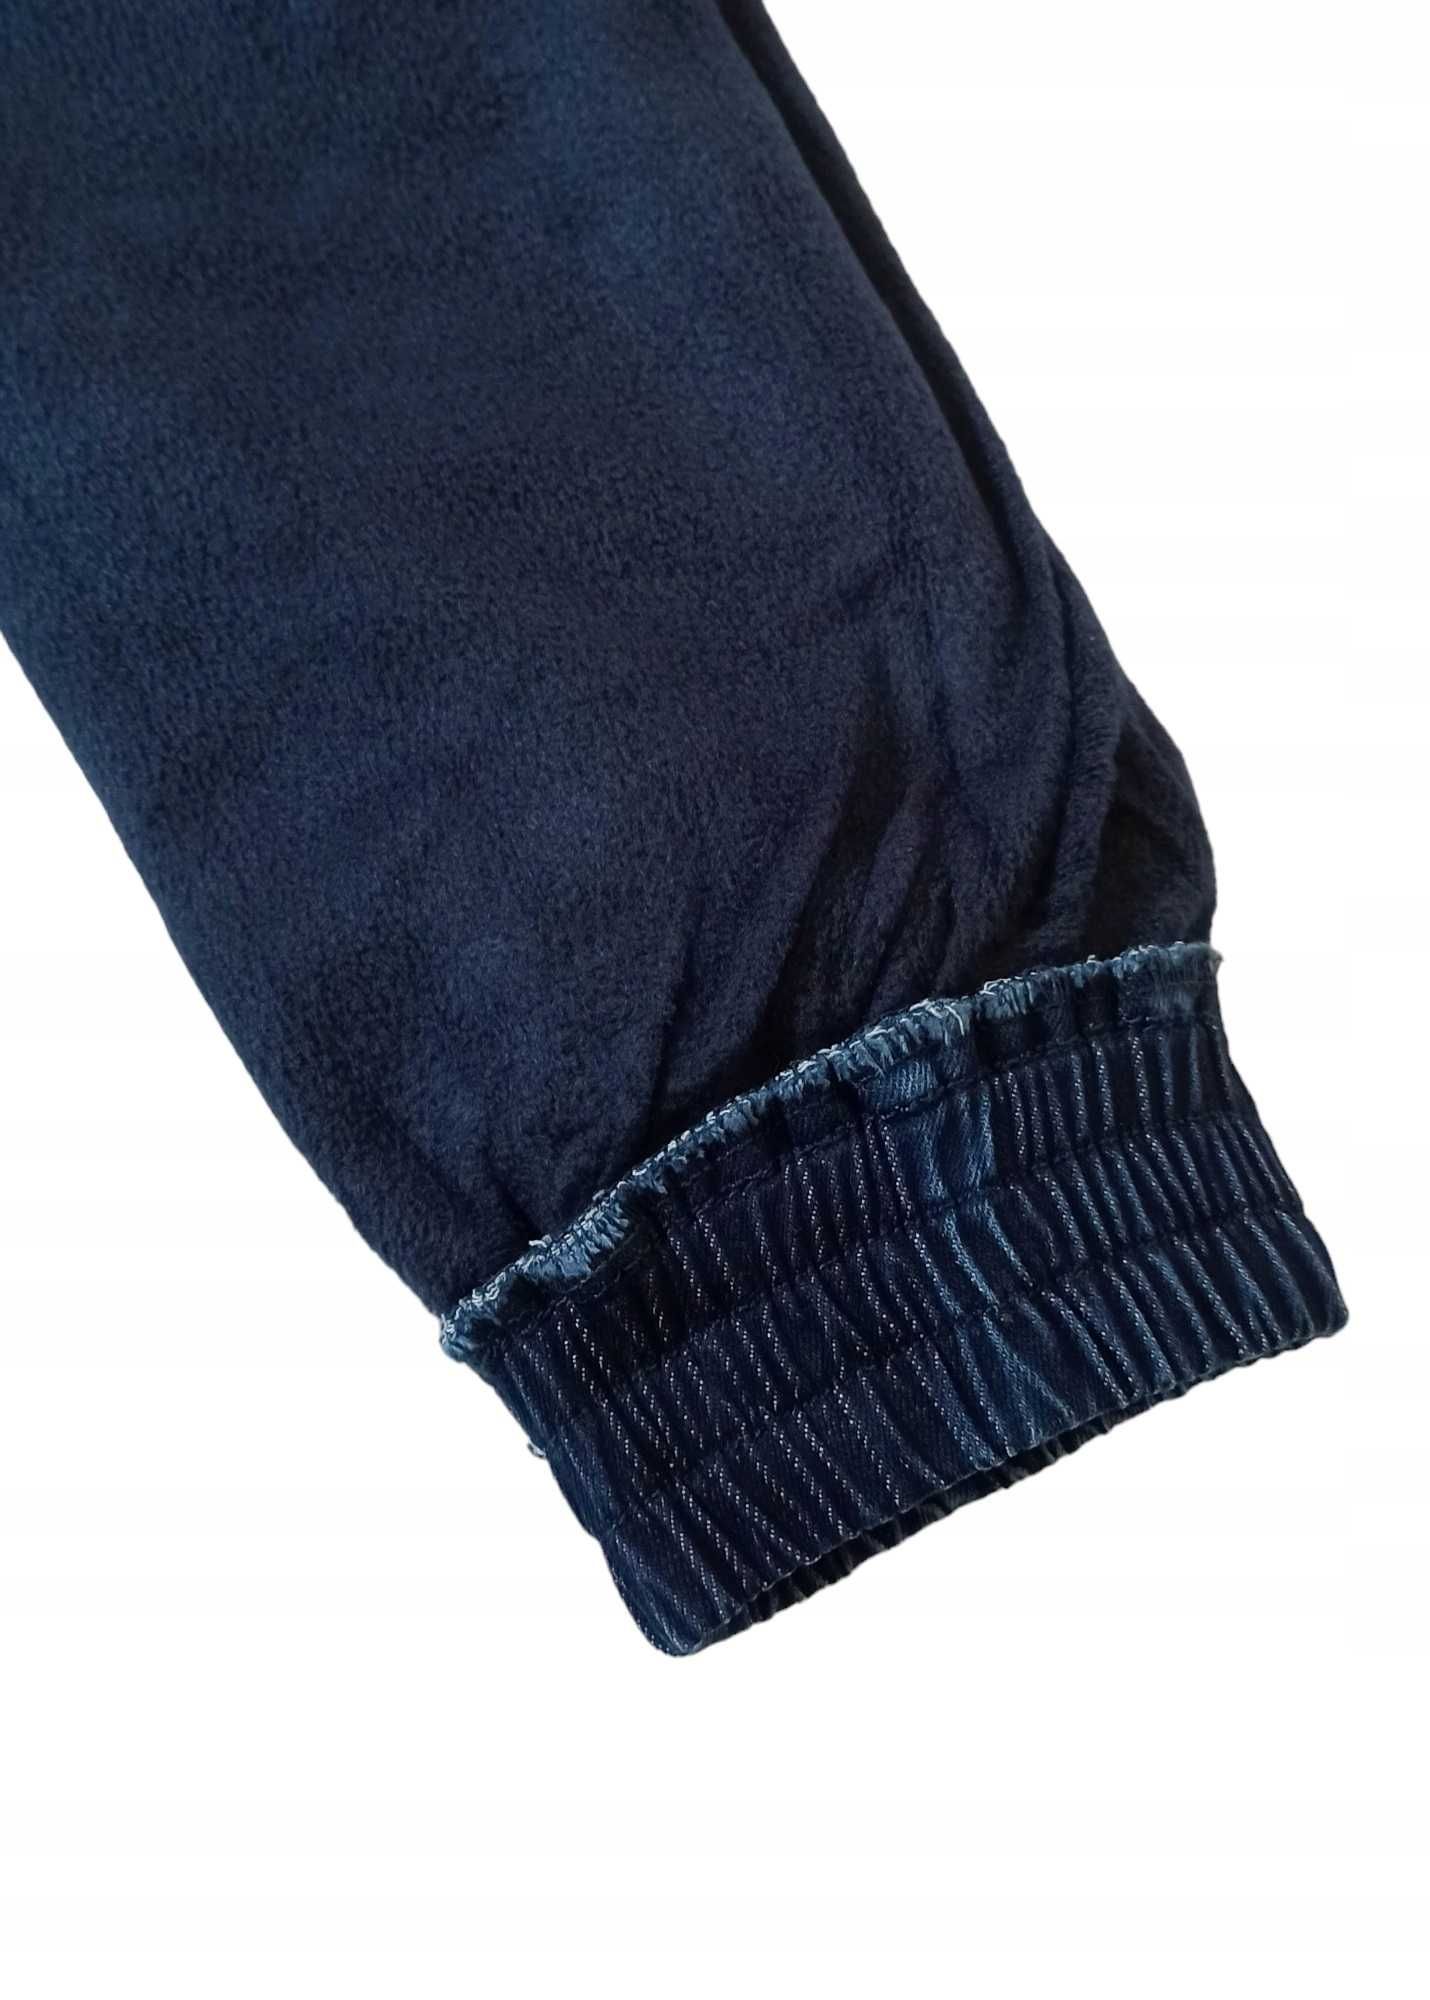 Spodnie Jeans miękkie elastyczne GUMA ocieplane polarem nowy r 110-116